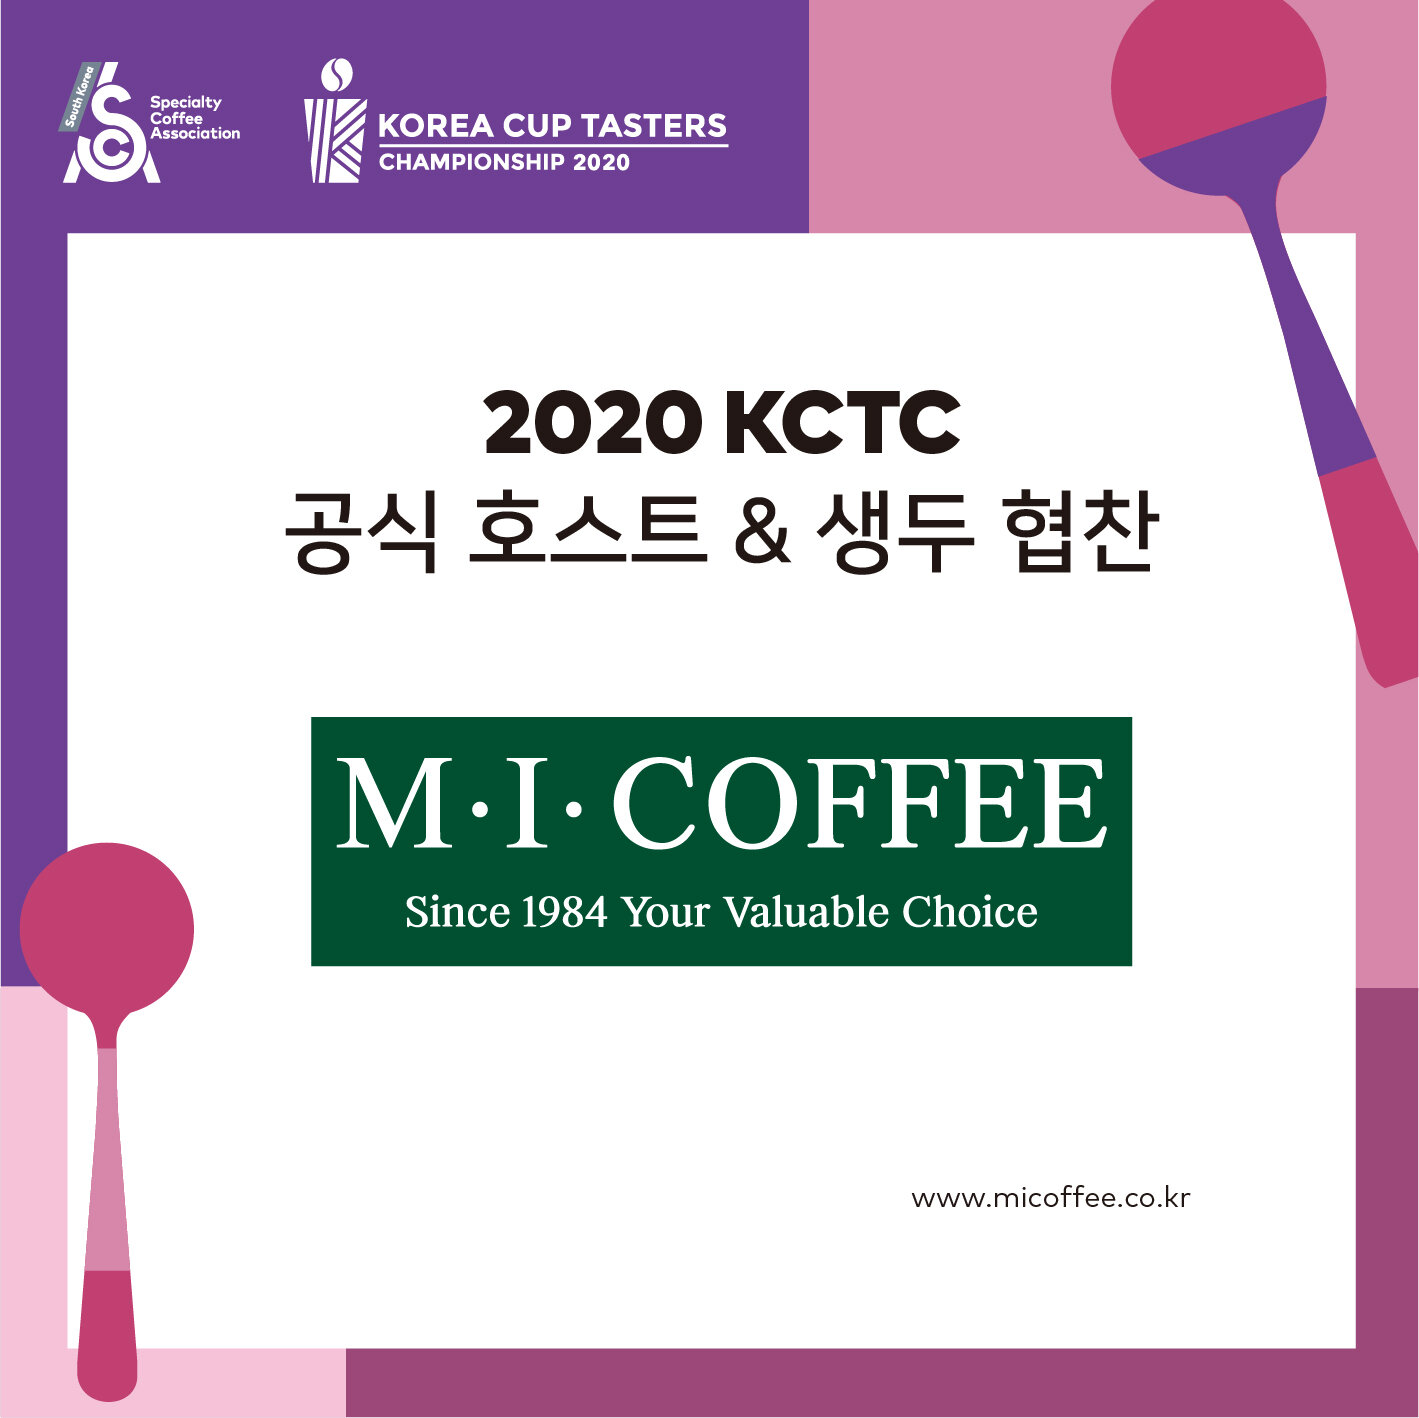 2020 KCTC 공식호스트_셍두협찬_엠아이커피.jpg